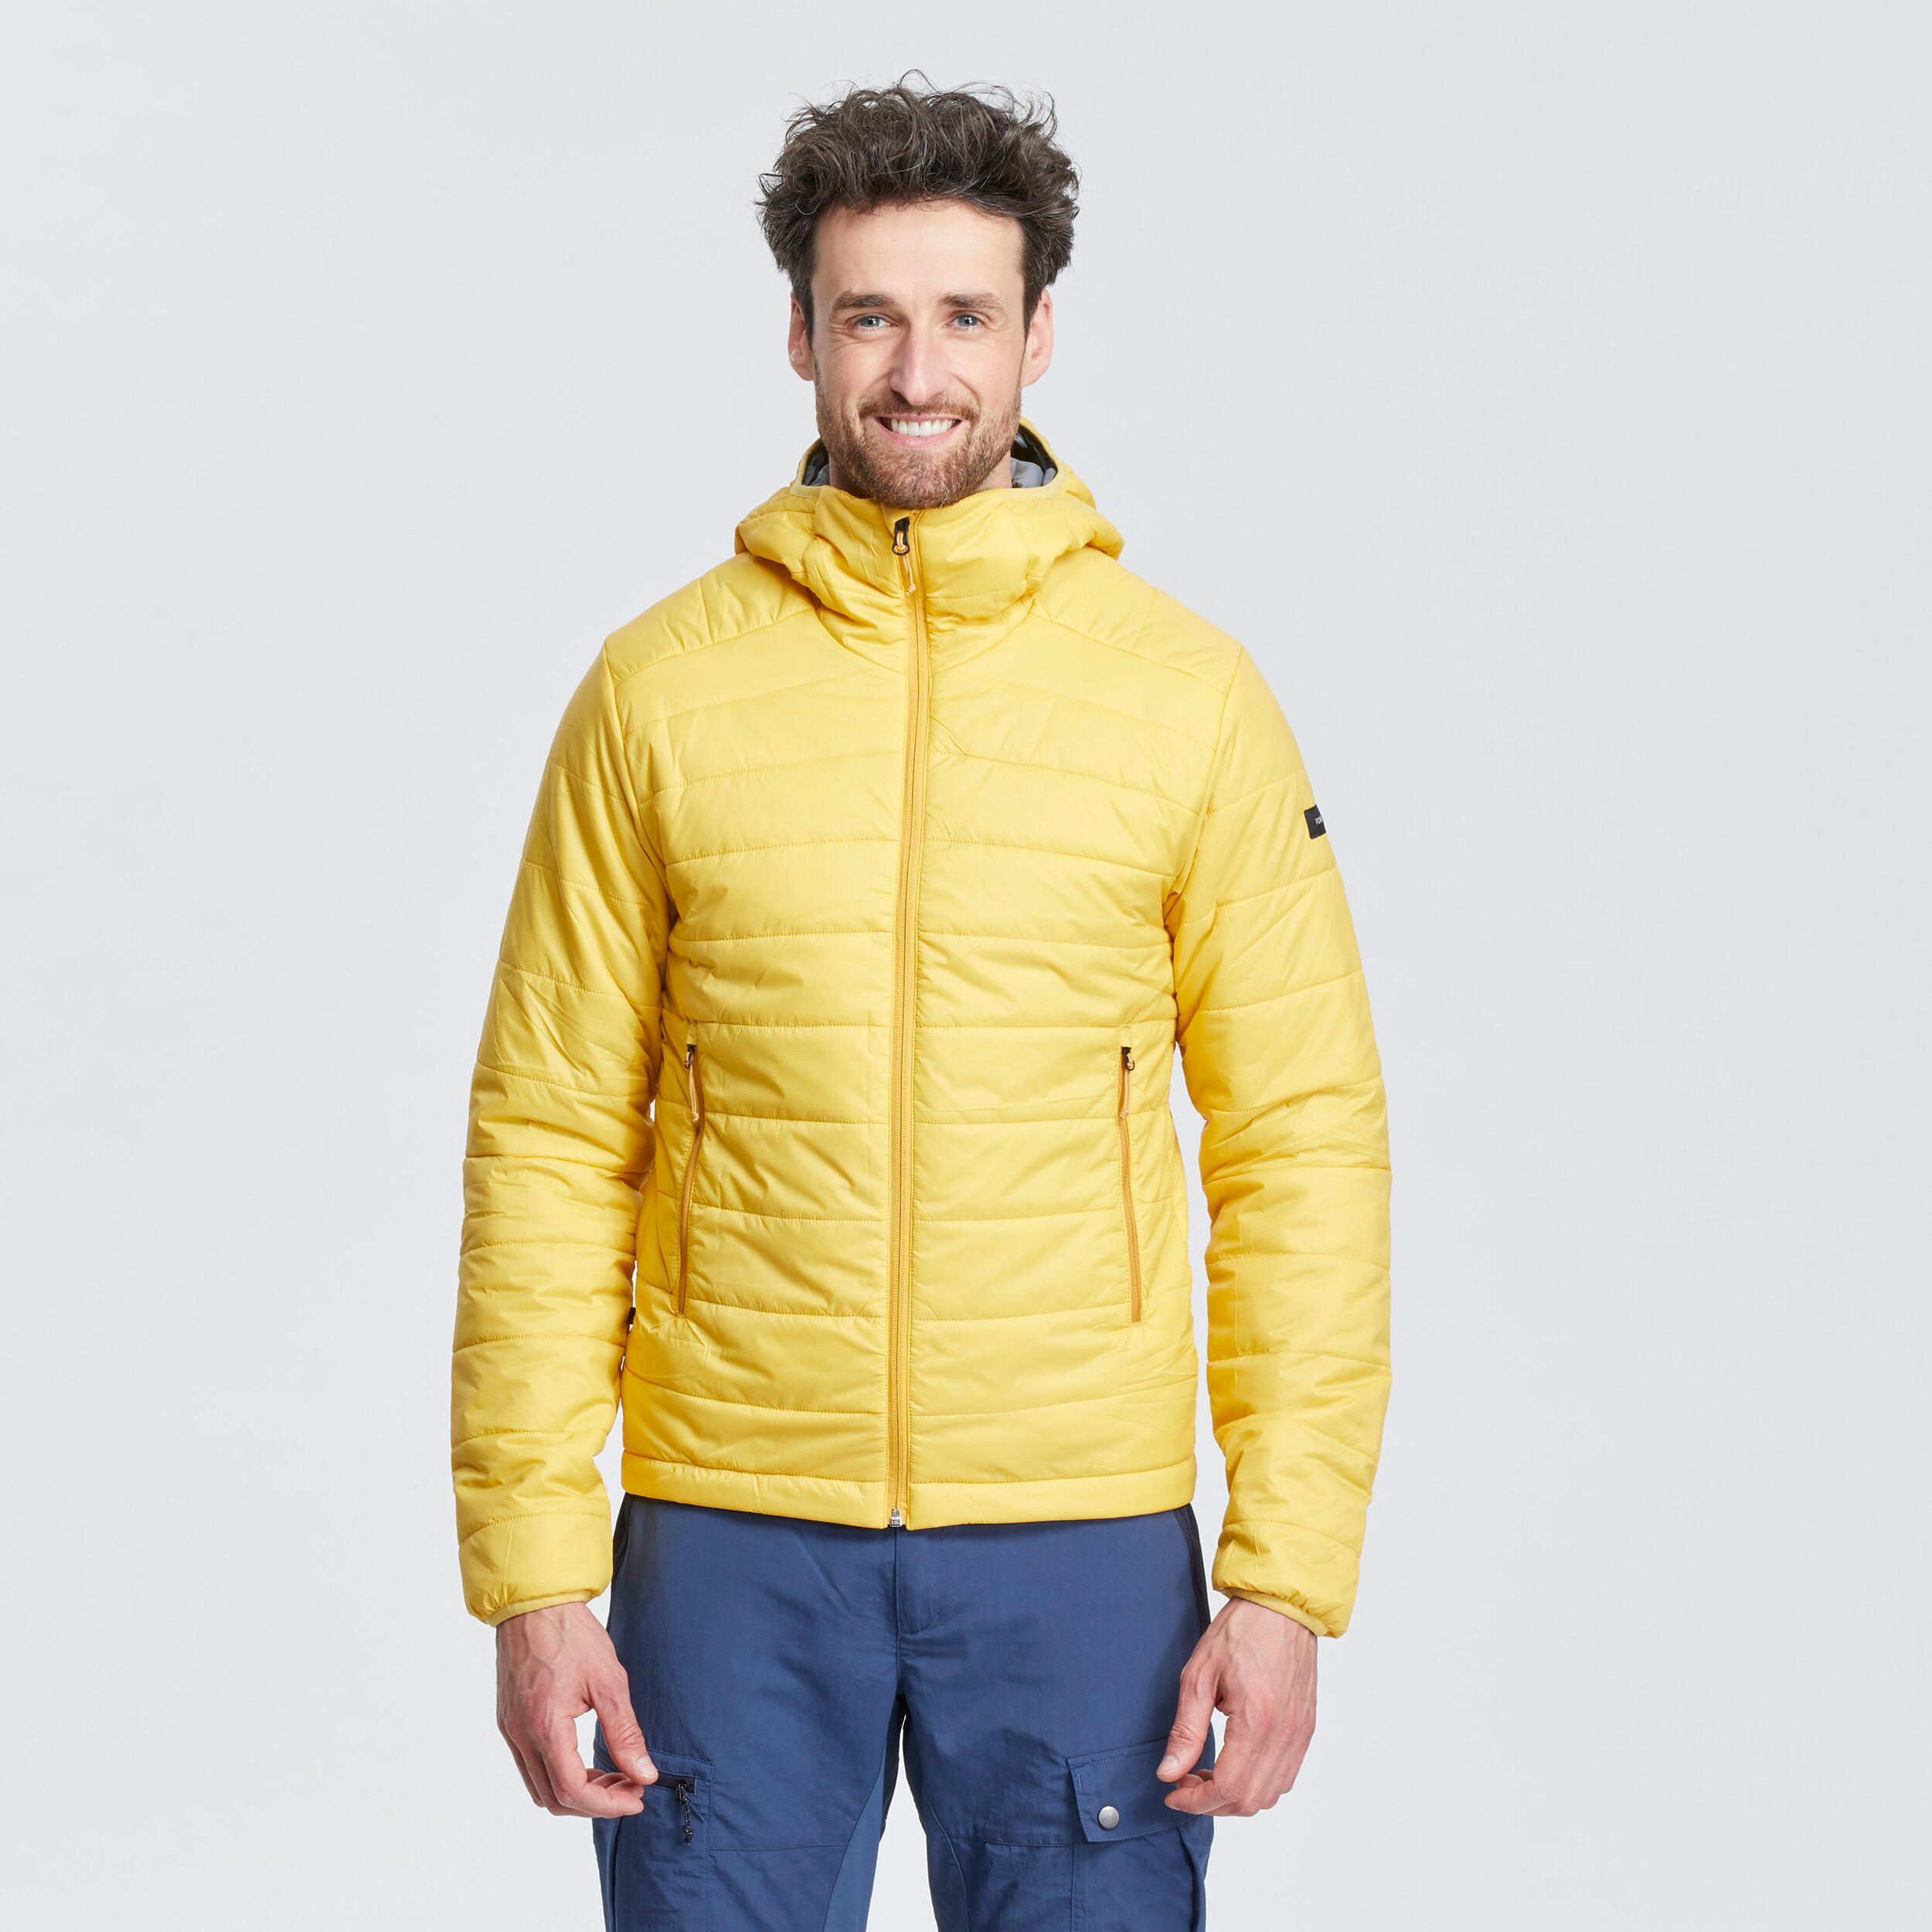 Buy WoMen's Trekking Padded Jacket Hooded 5°C Turquoise Online | Decathlon